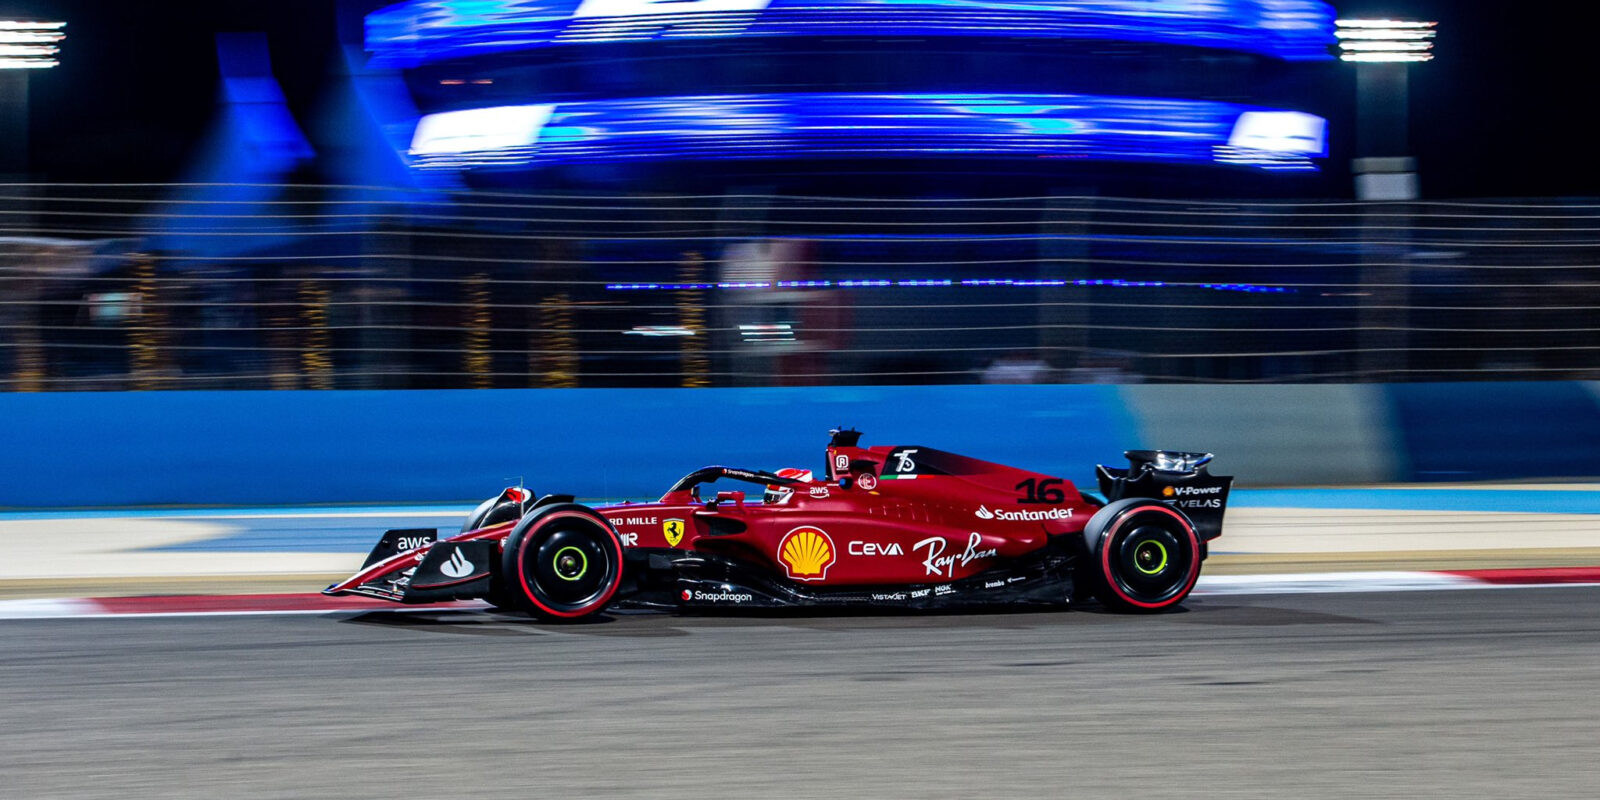 Ferrari je zpátky! Leclerc před Verstappenem a Sainzem